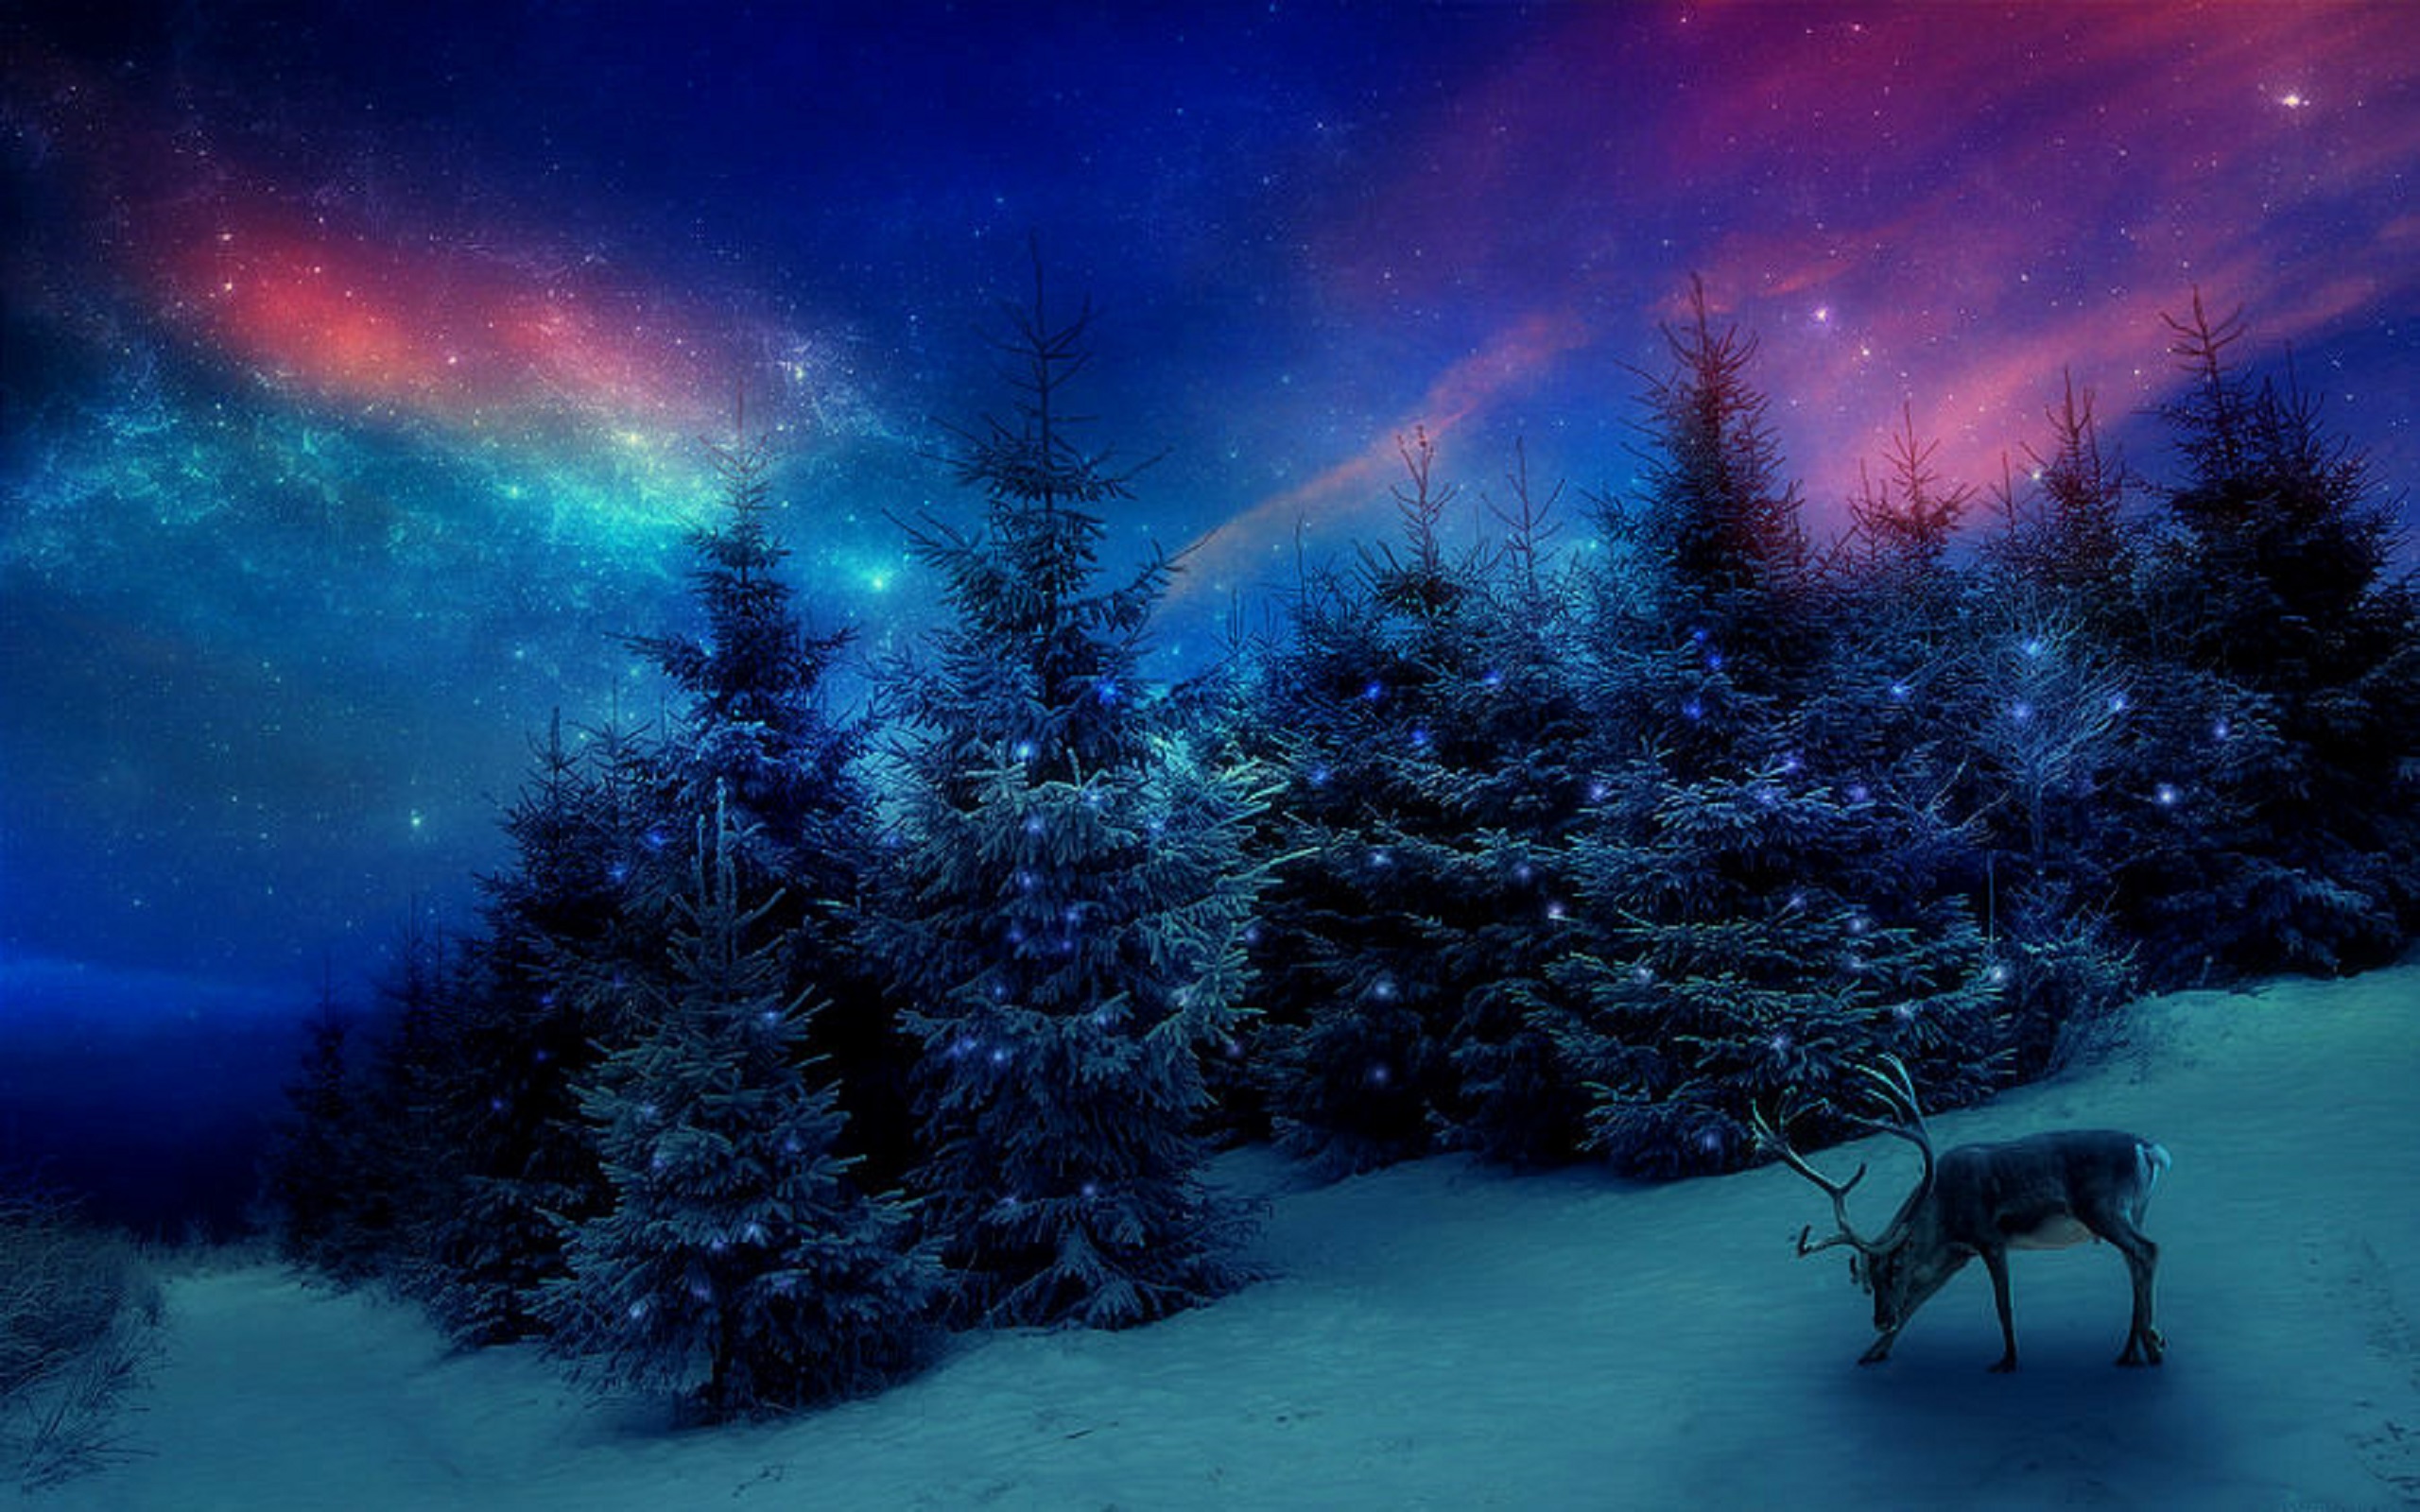 Скачать обои бесплатно Зима, Снег, Лес, Дерево, Олень, Художественные картинка на рабочий стол ПК